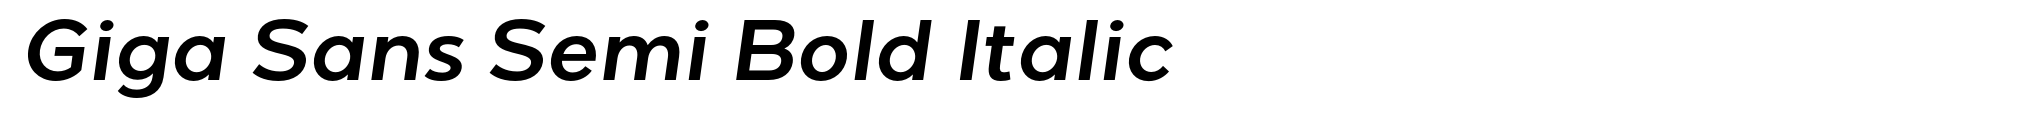 Giga Sans Semi Bold Italic image